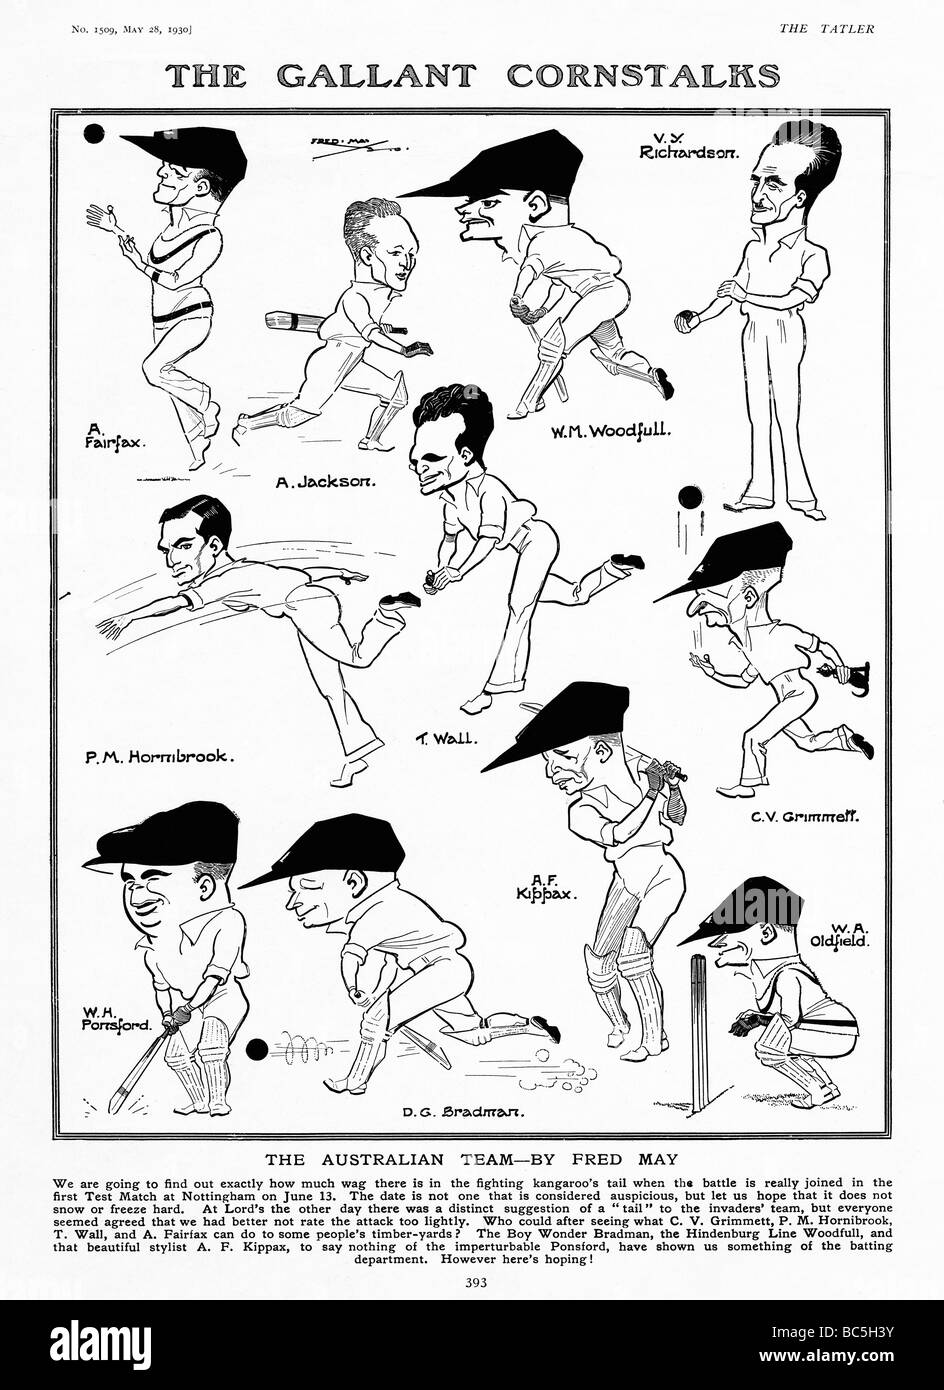 Gallant Maisstauden 1930 Karikaturen von Fred Mai von der australischen Kricketspieler touring England für Baureihe 1930 Asche Stockfoto